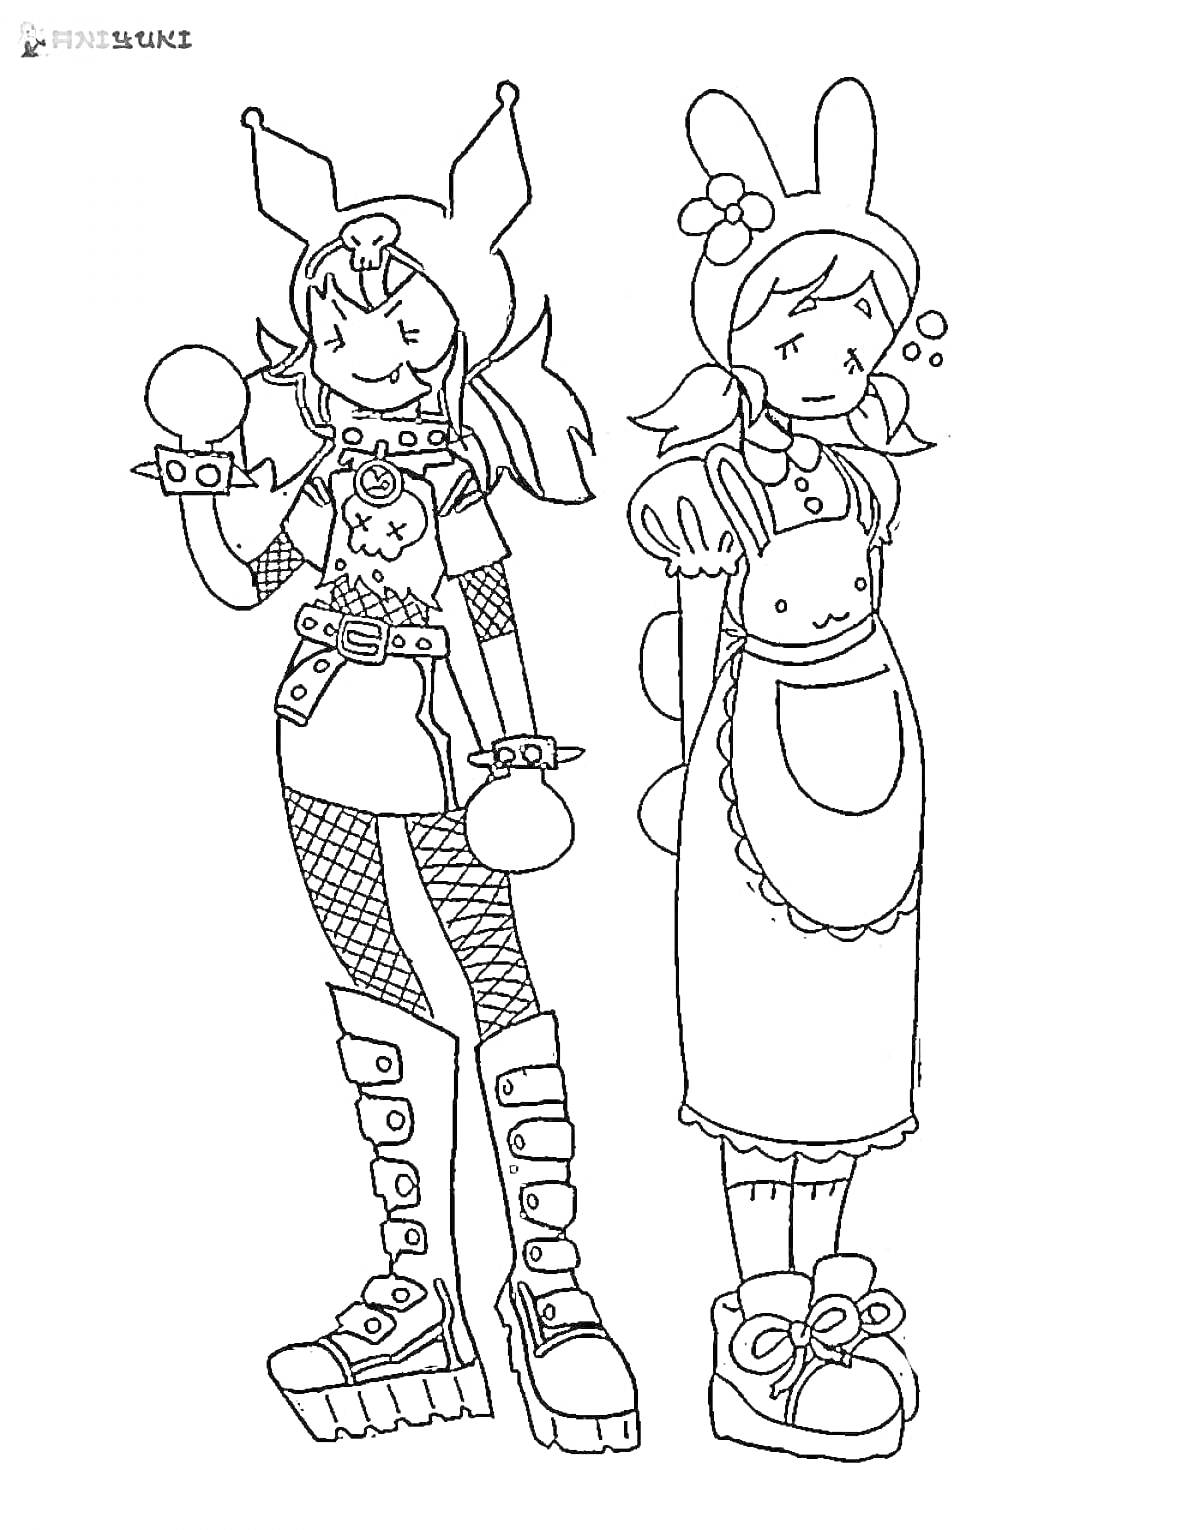 РаскраскаДевушки в костюмах: левая в стиле панка с перчатками и шипами, правая в переднике с кроличьими ушами